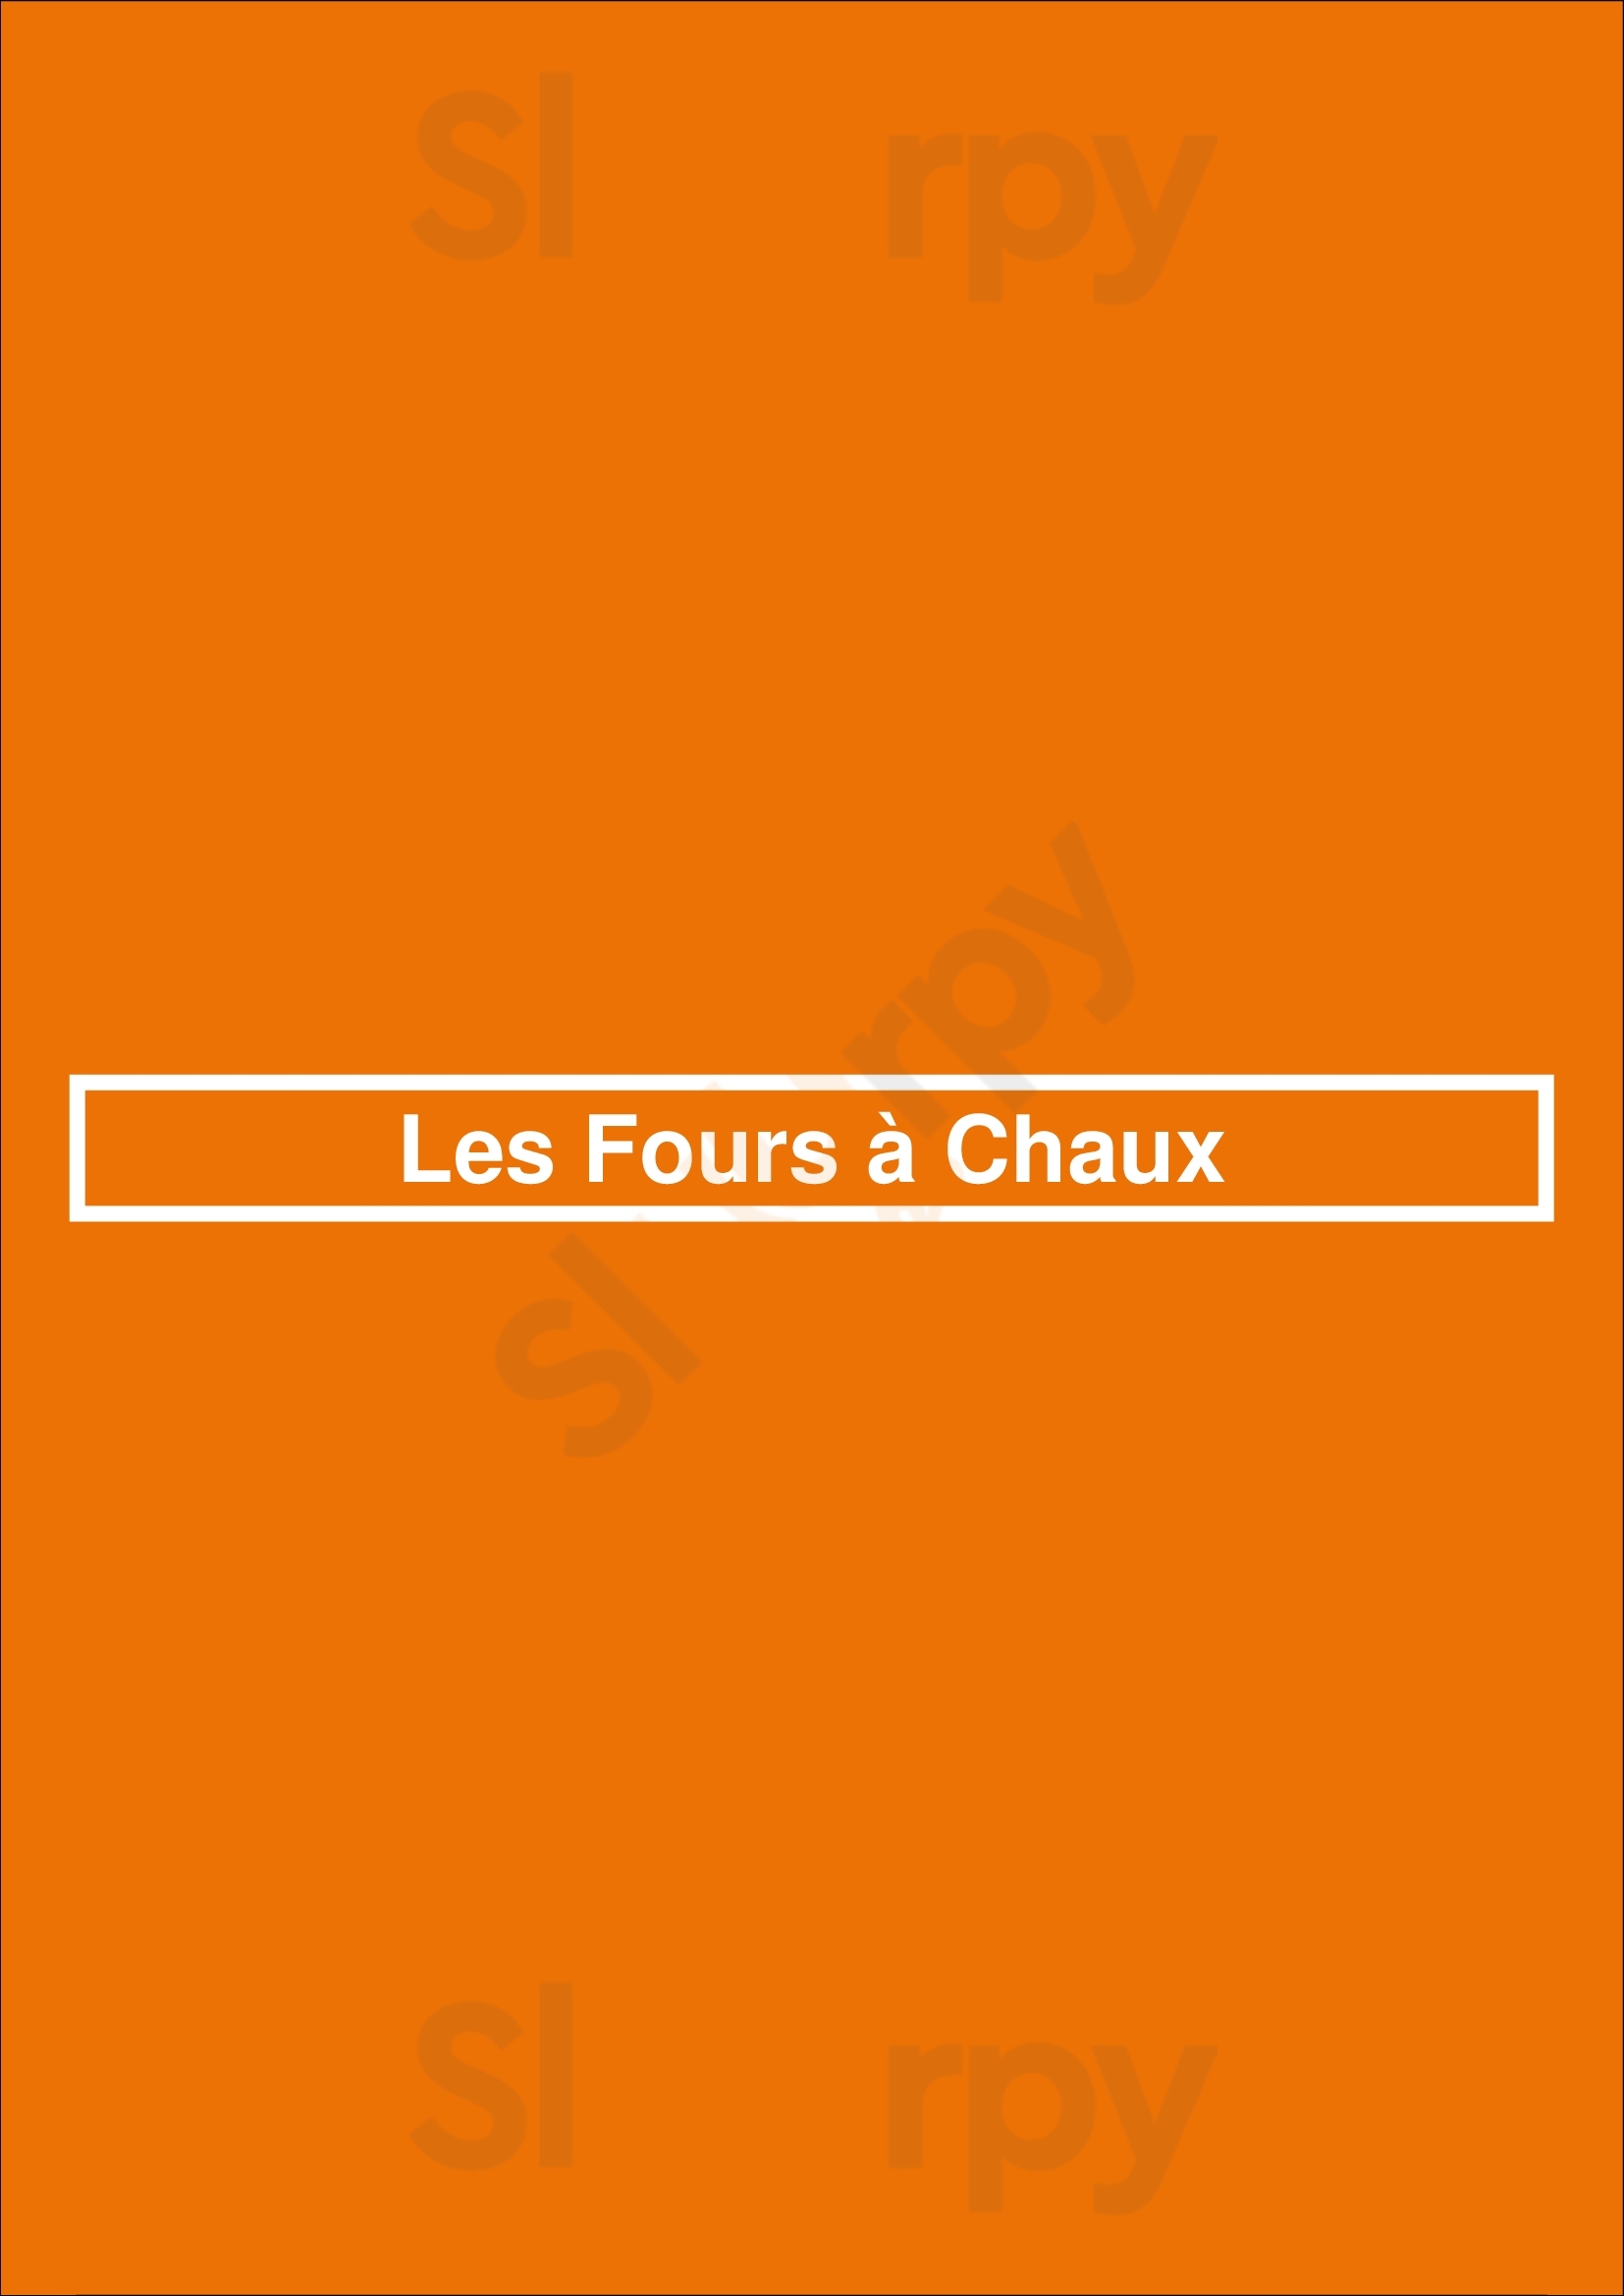 Les Fours à Chaux Le Mee-sur-Seine Menu - 1